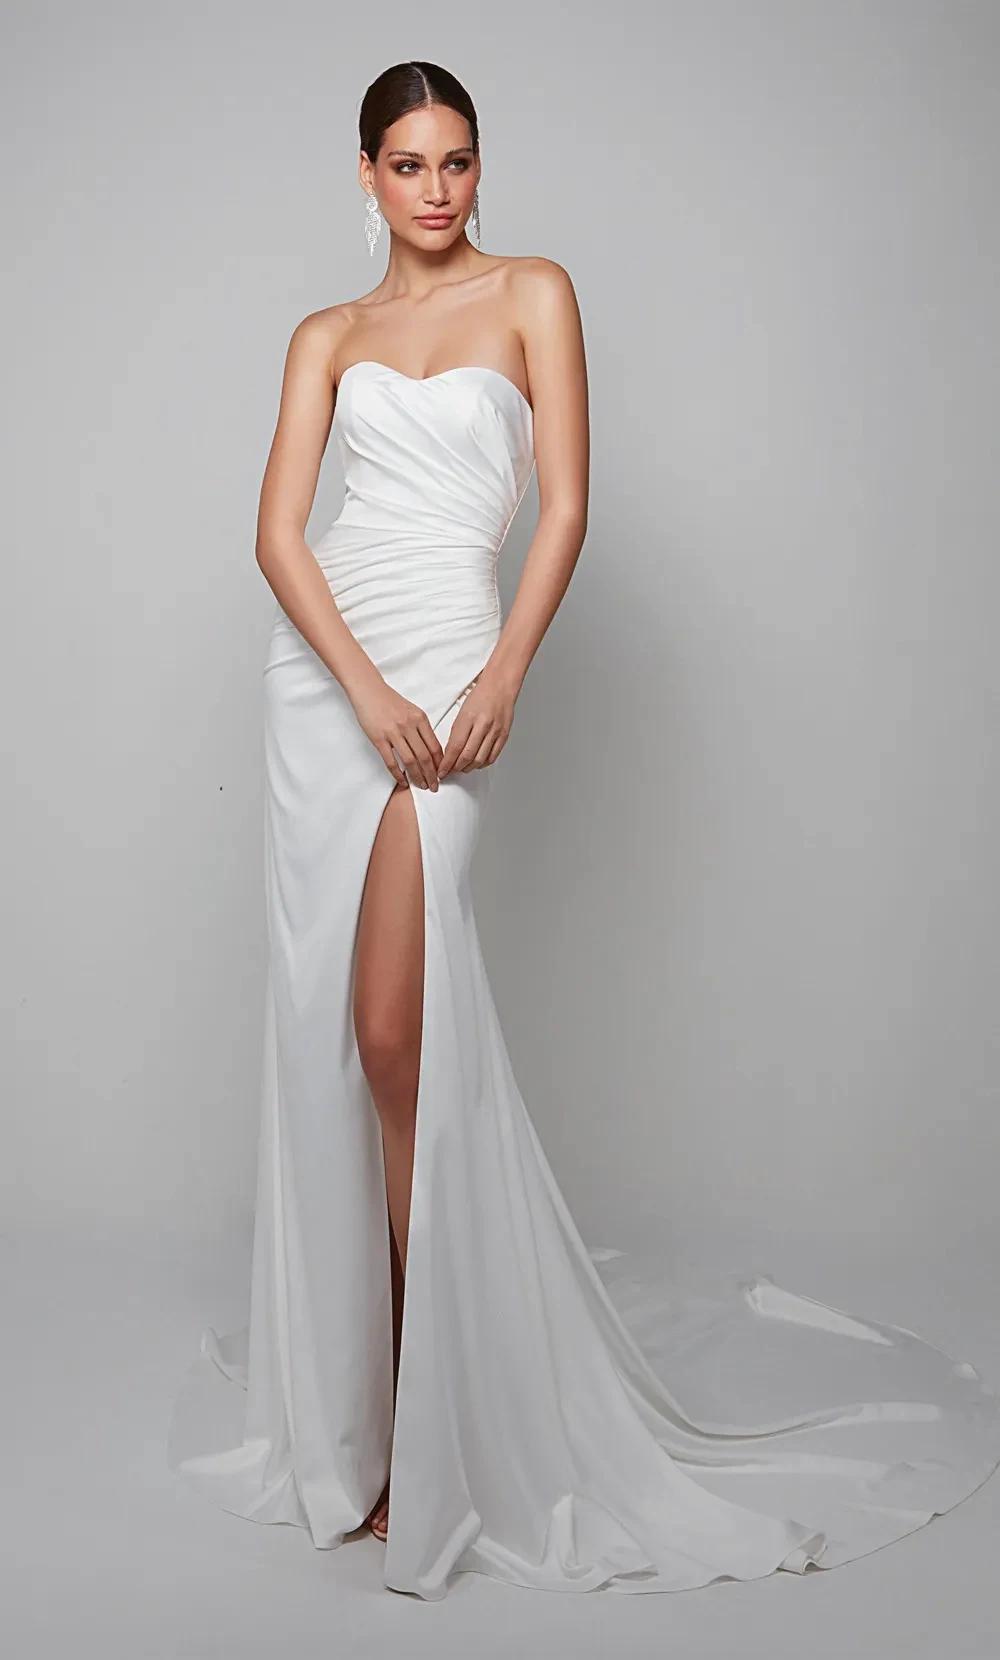 Alyce Paris wedding gown